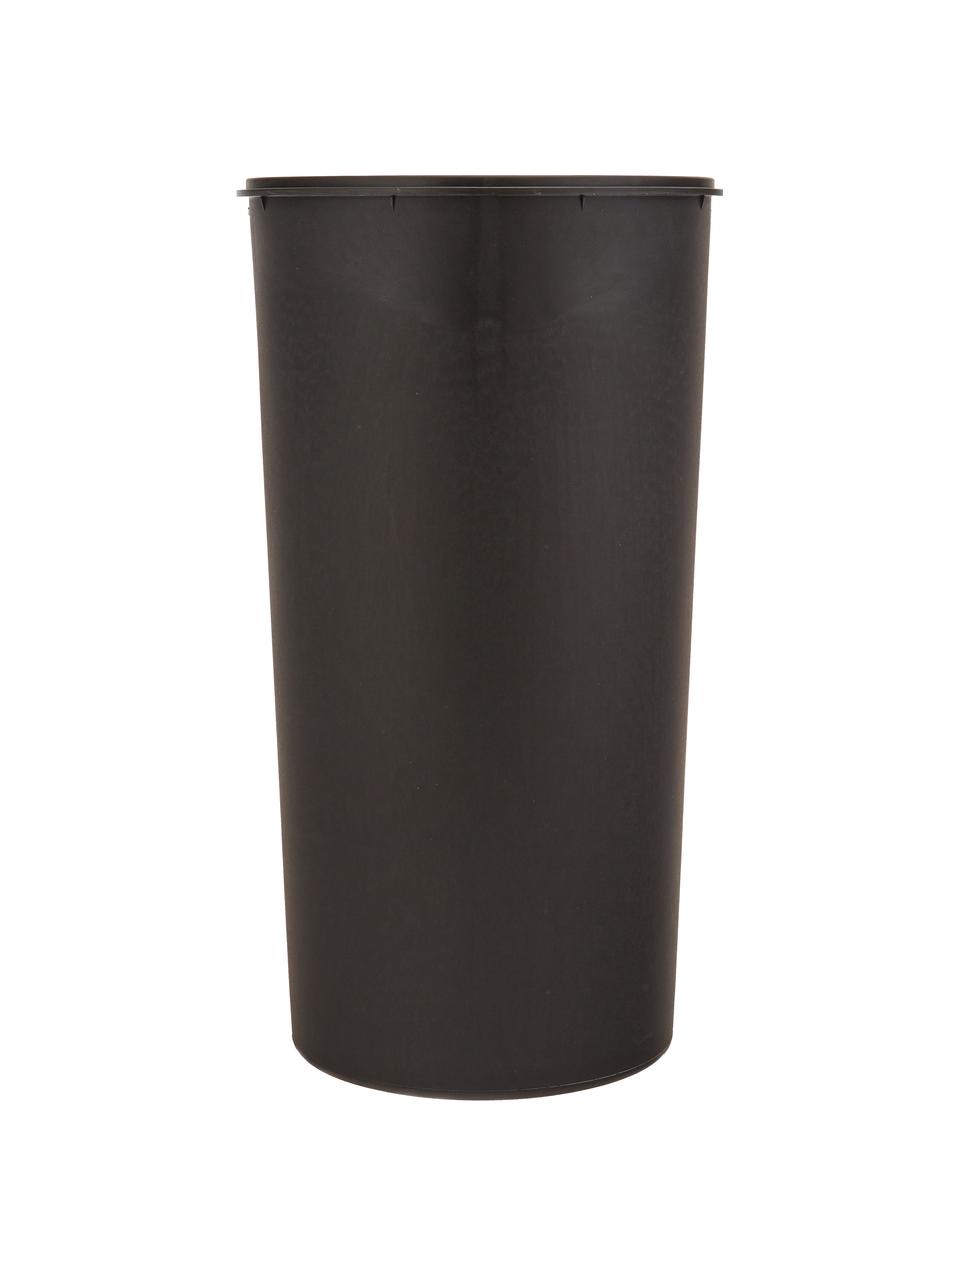 Abfalleimer Dustbin, 30 L, Beige, Ø 30 x H 68 cm